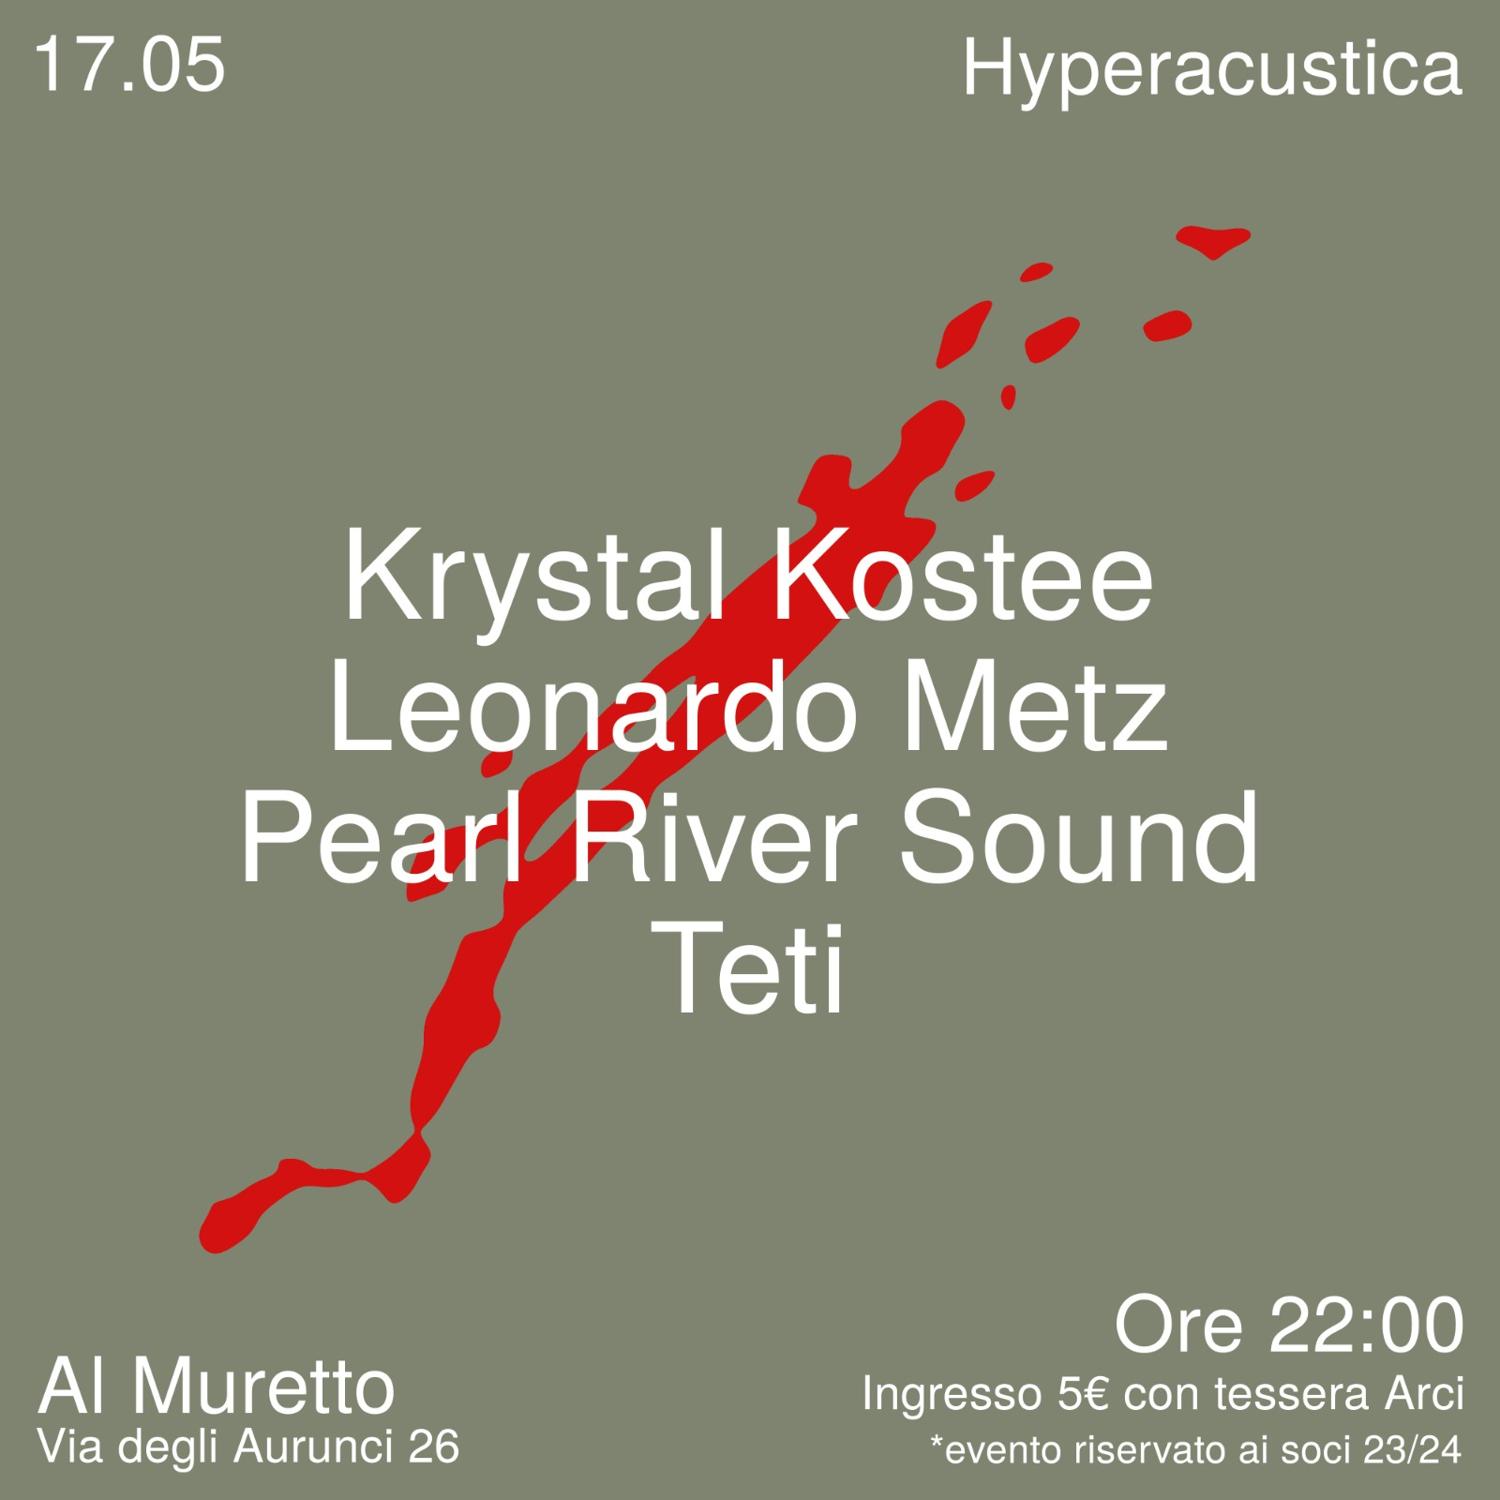 Hyperacustica Presents: Pearl River Sound & Krystal Kostee